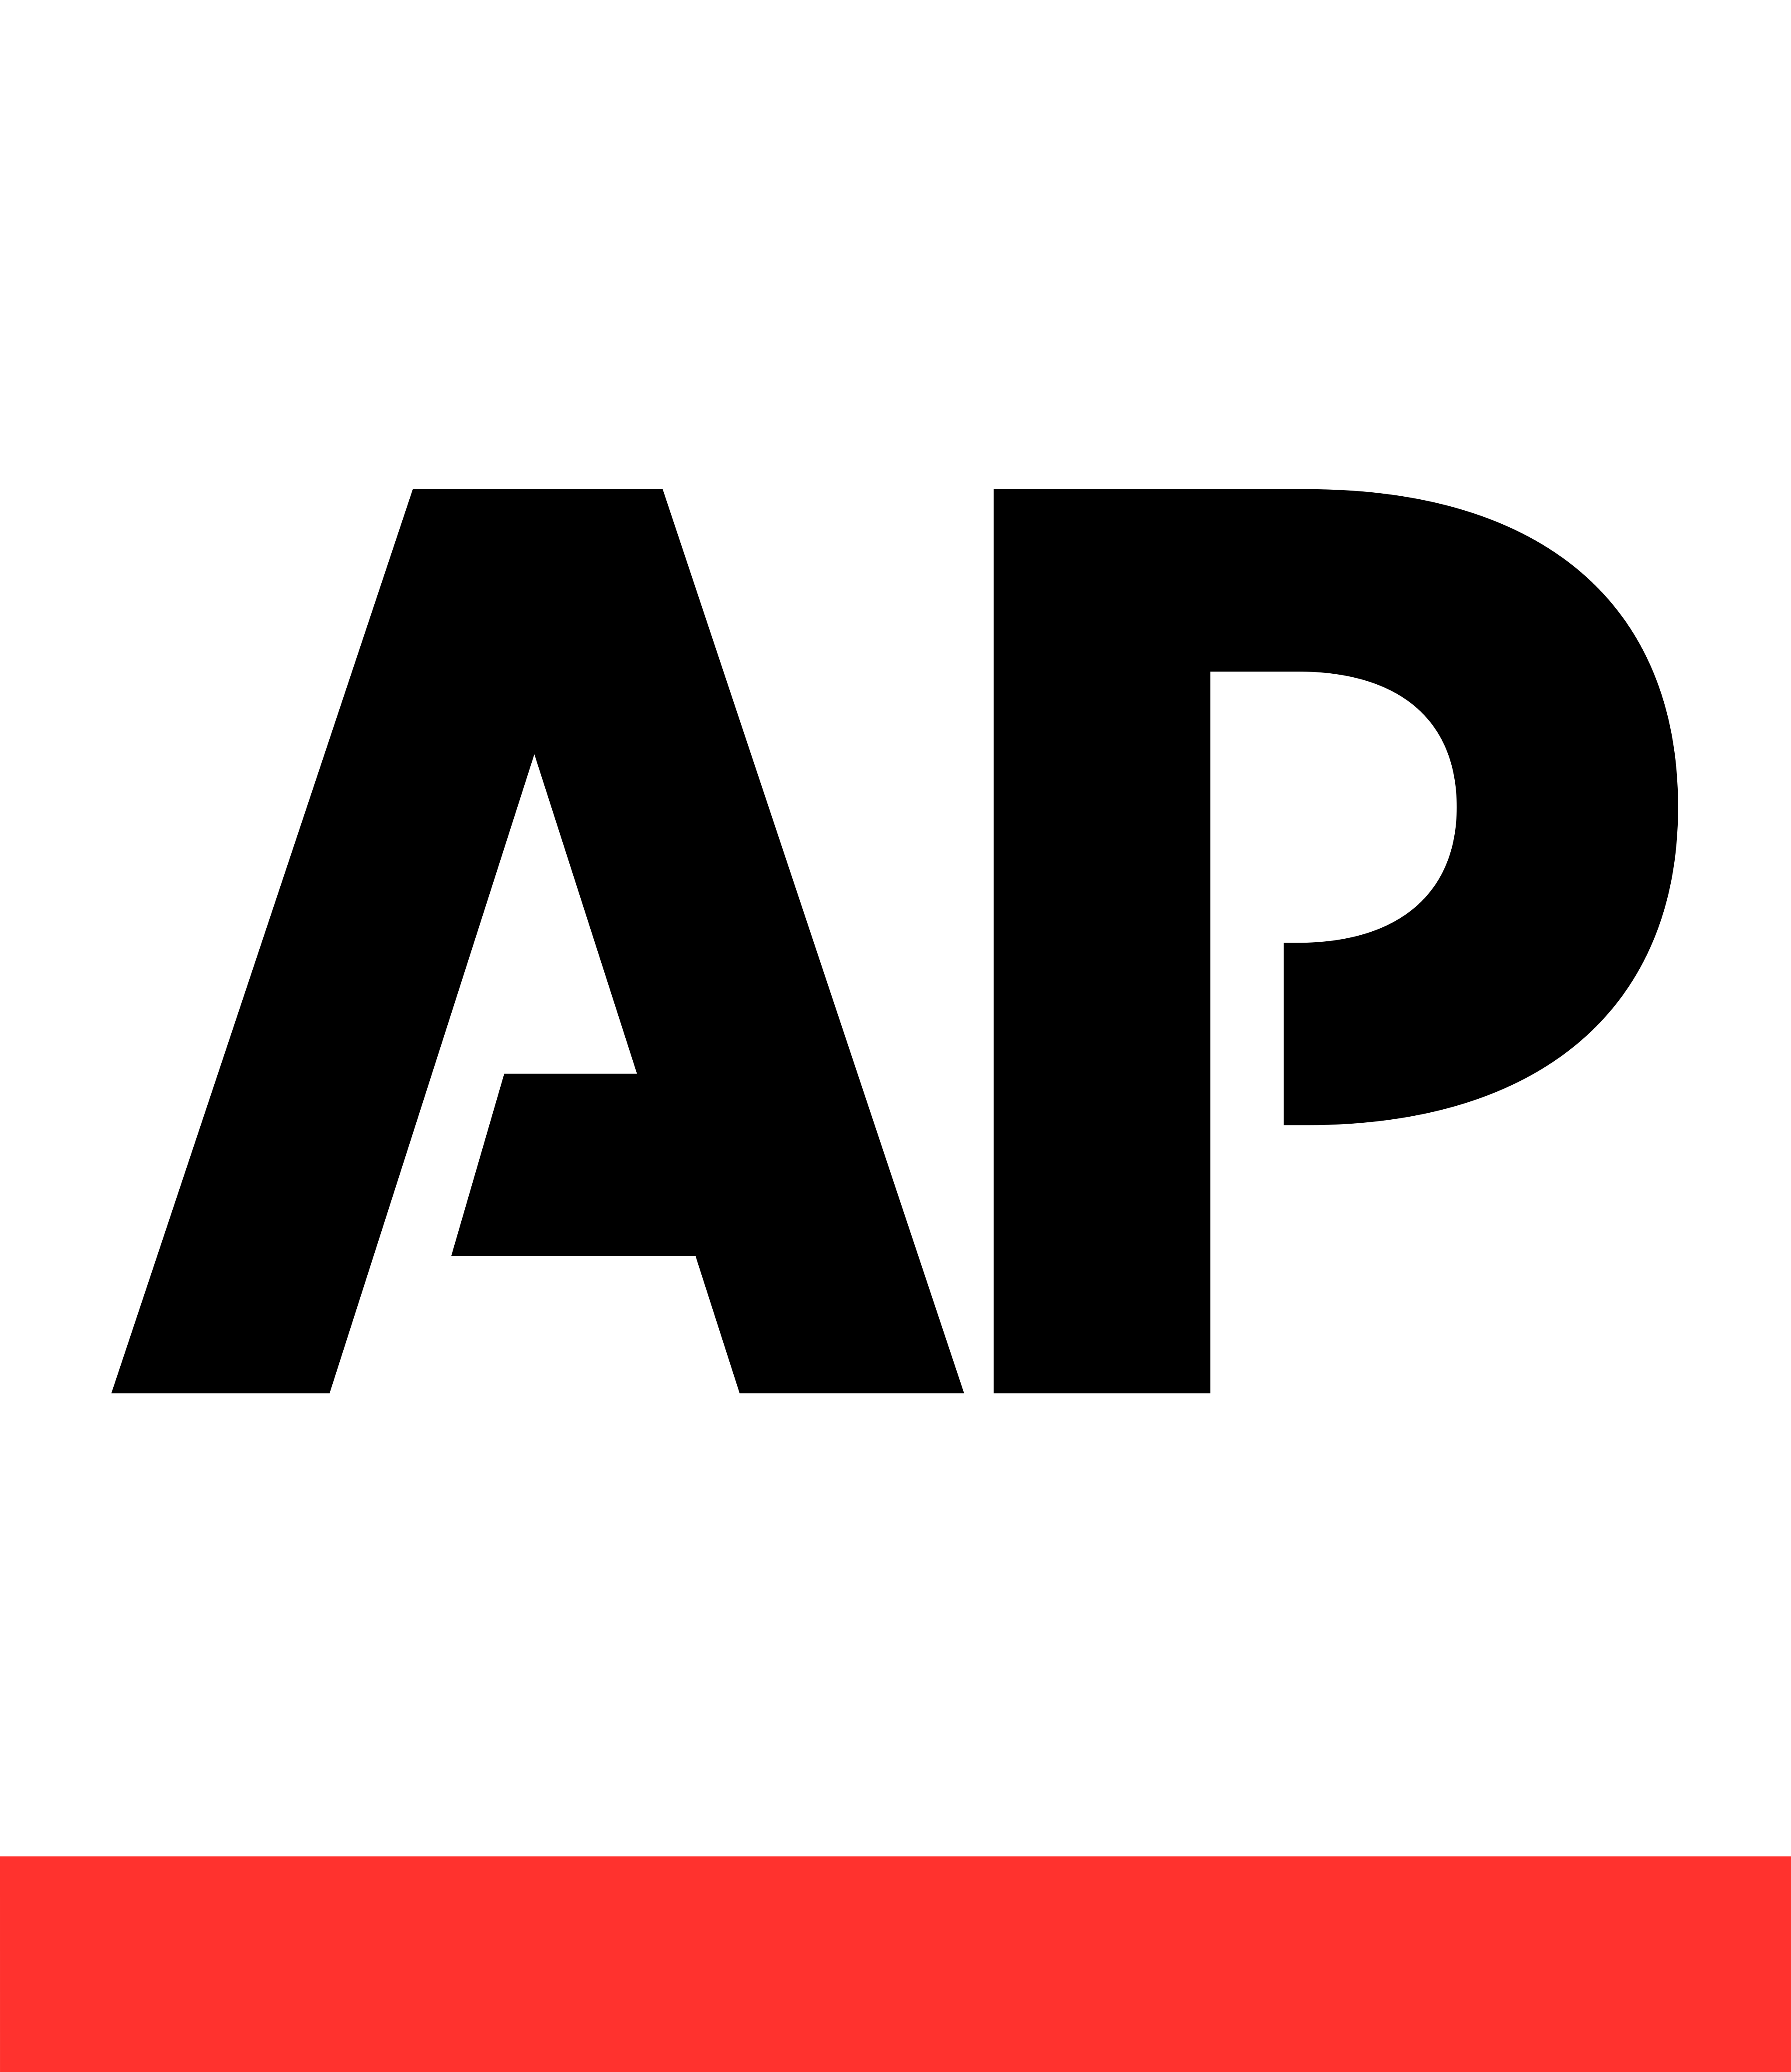 associated press logo - Associated Press Logo